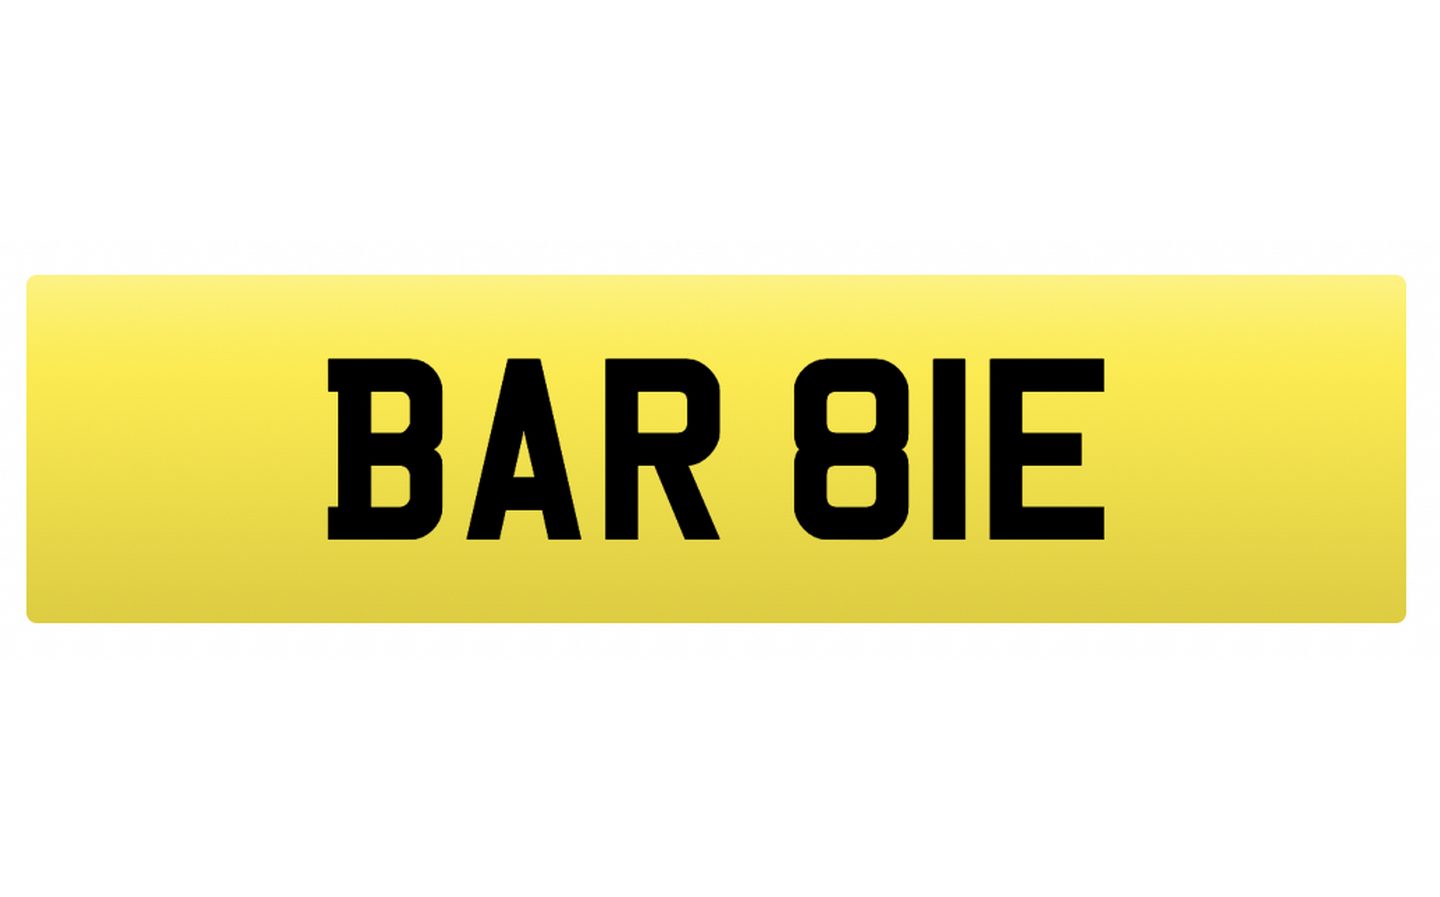 BAR 8IE registration plate